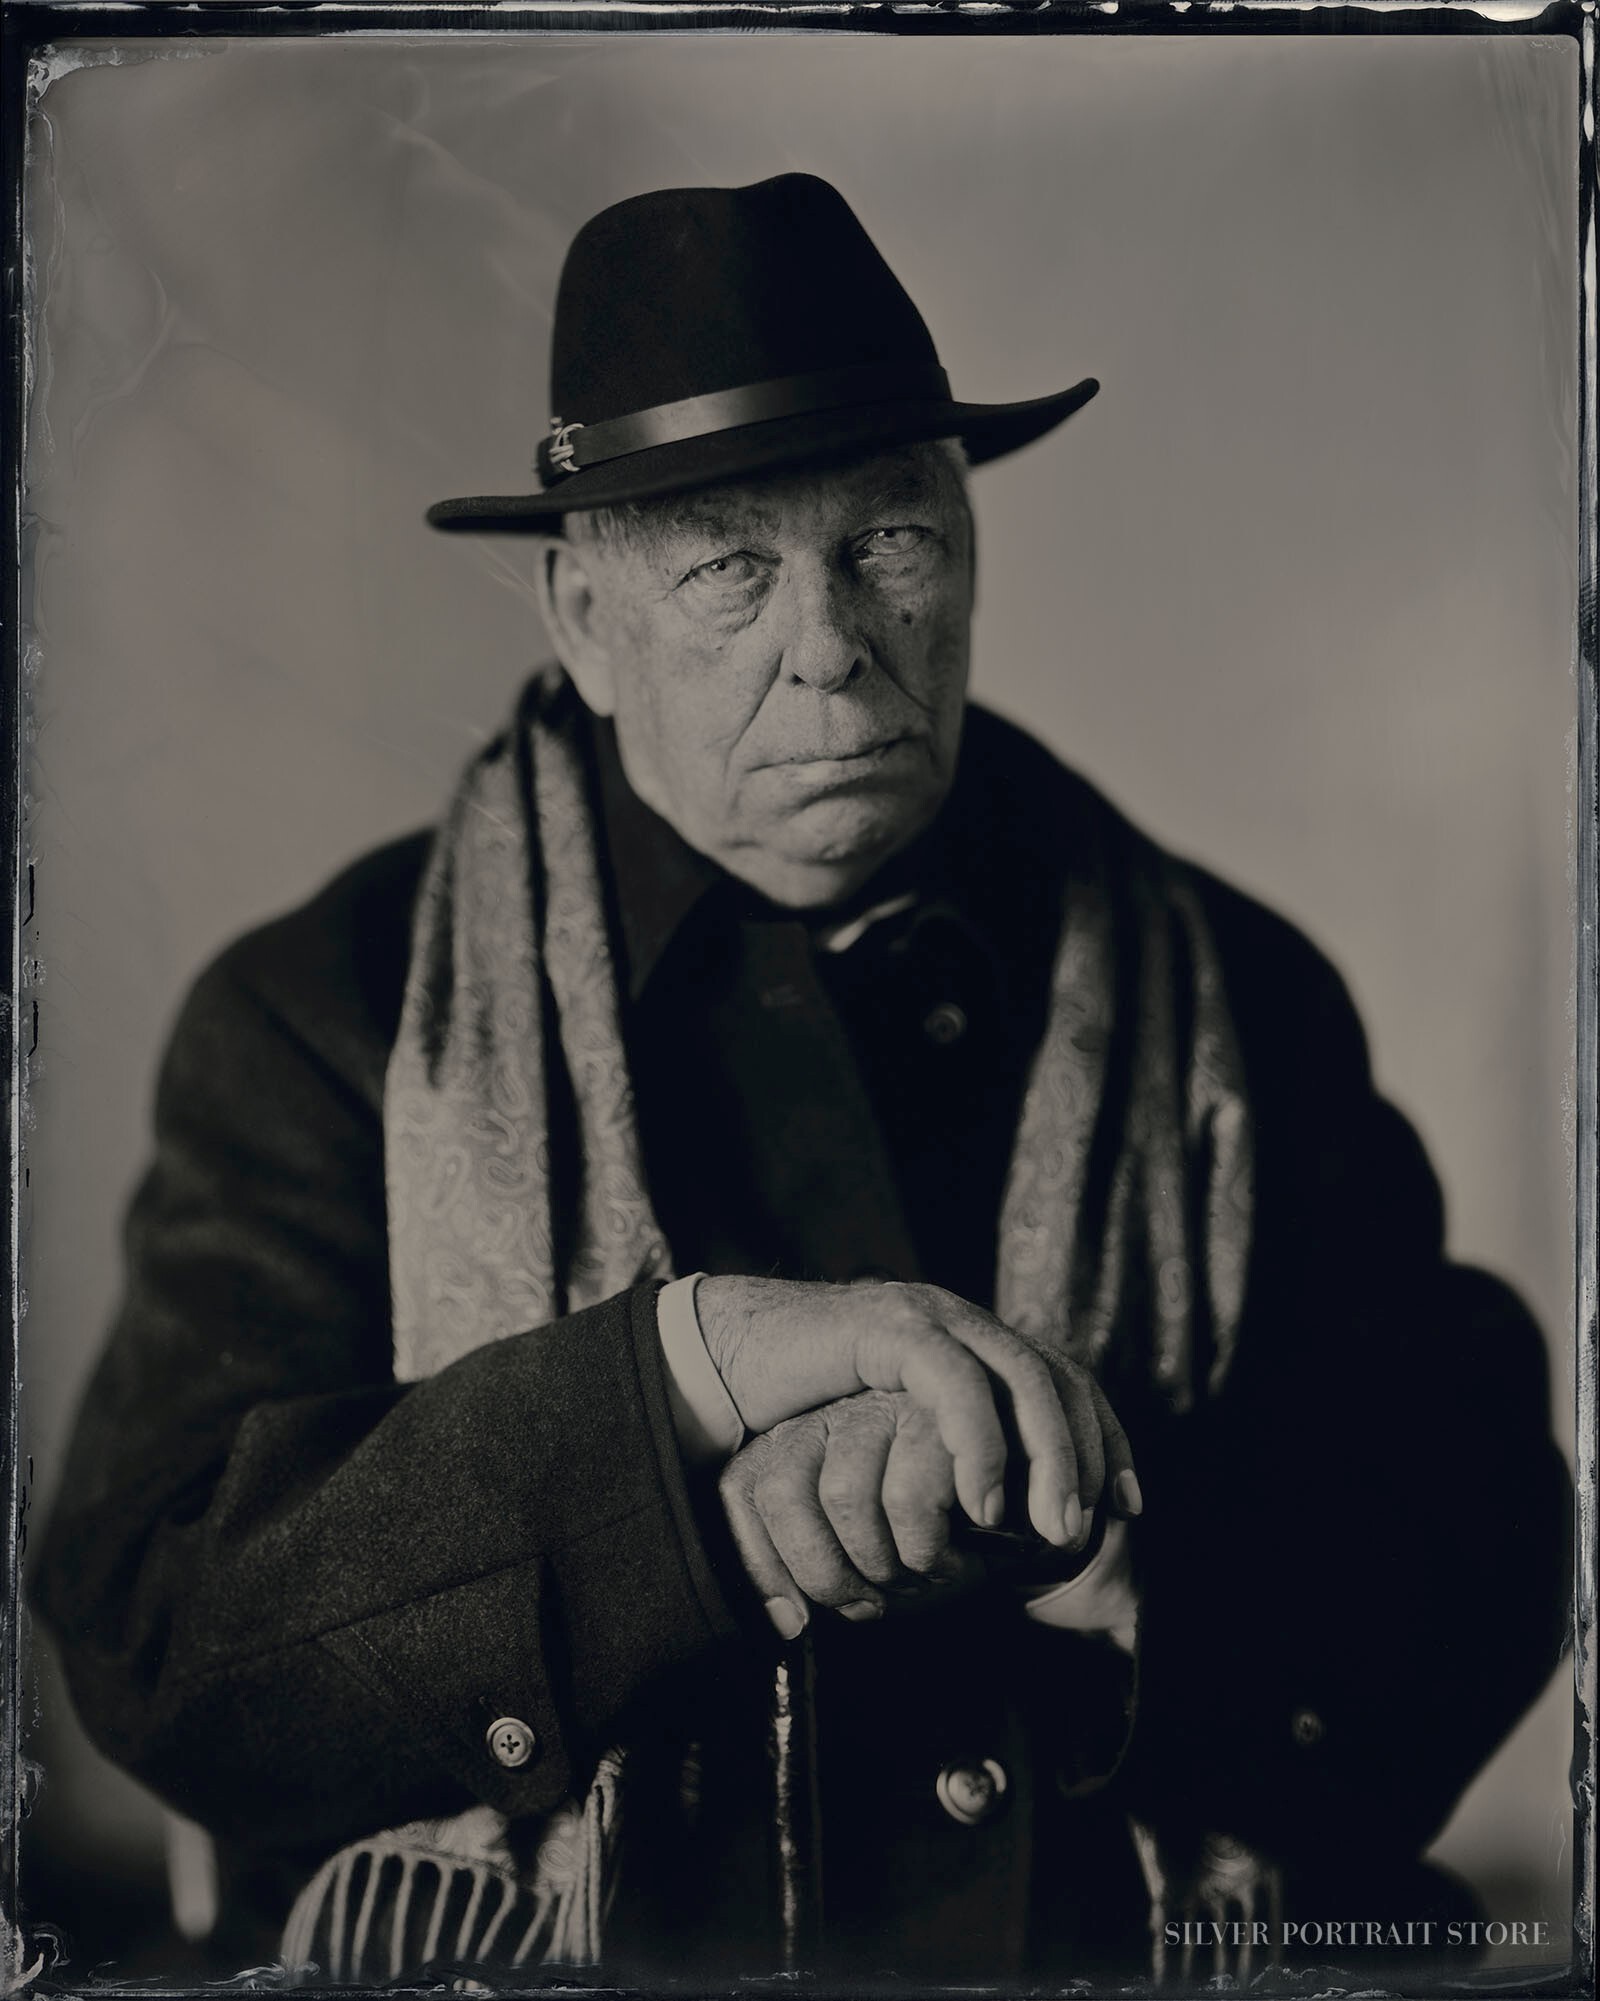 Joop van Hal-Silver Portrait Store-Scan from Wet plate collodion-Tintype 20 x 25 cm.